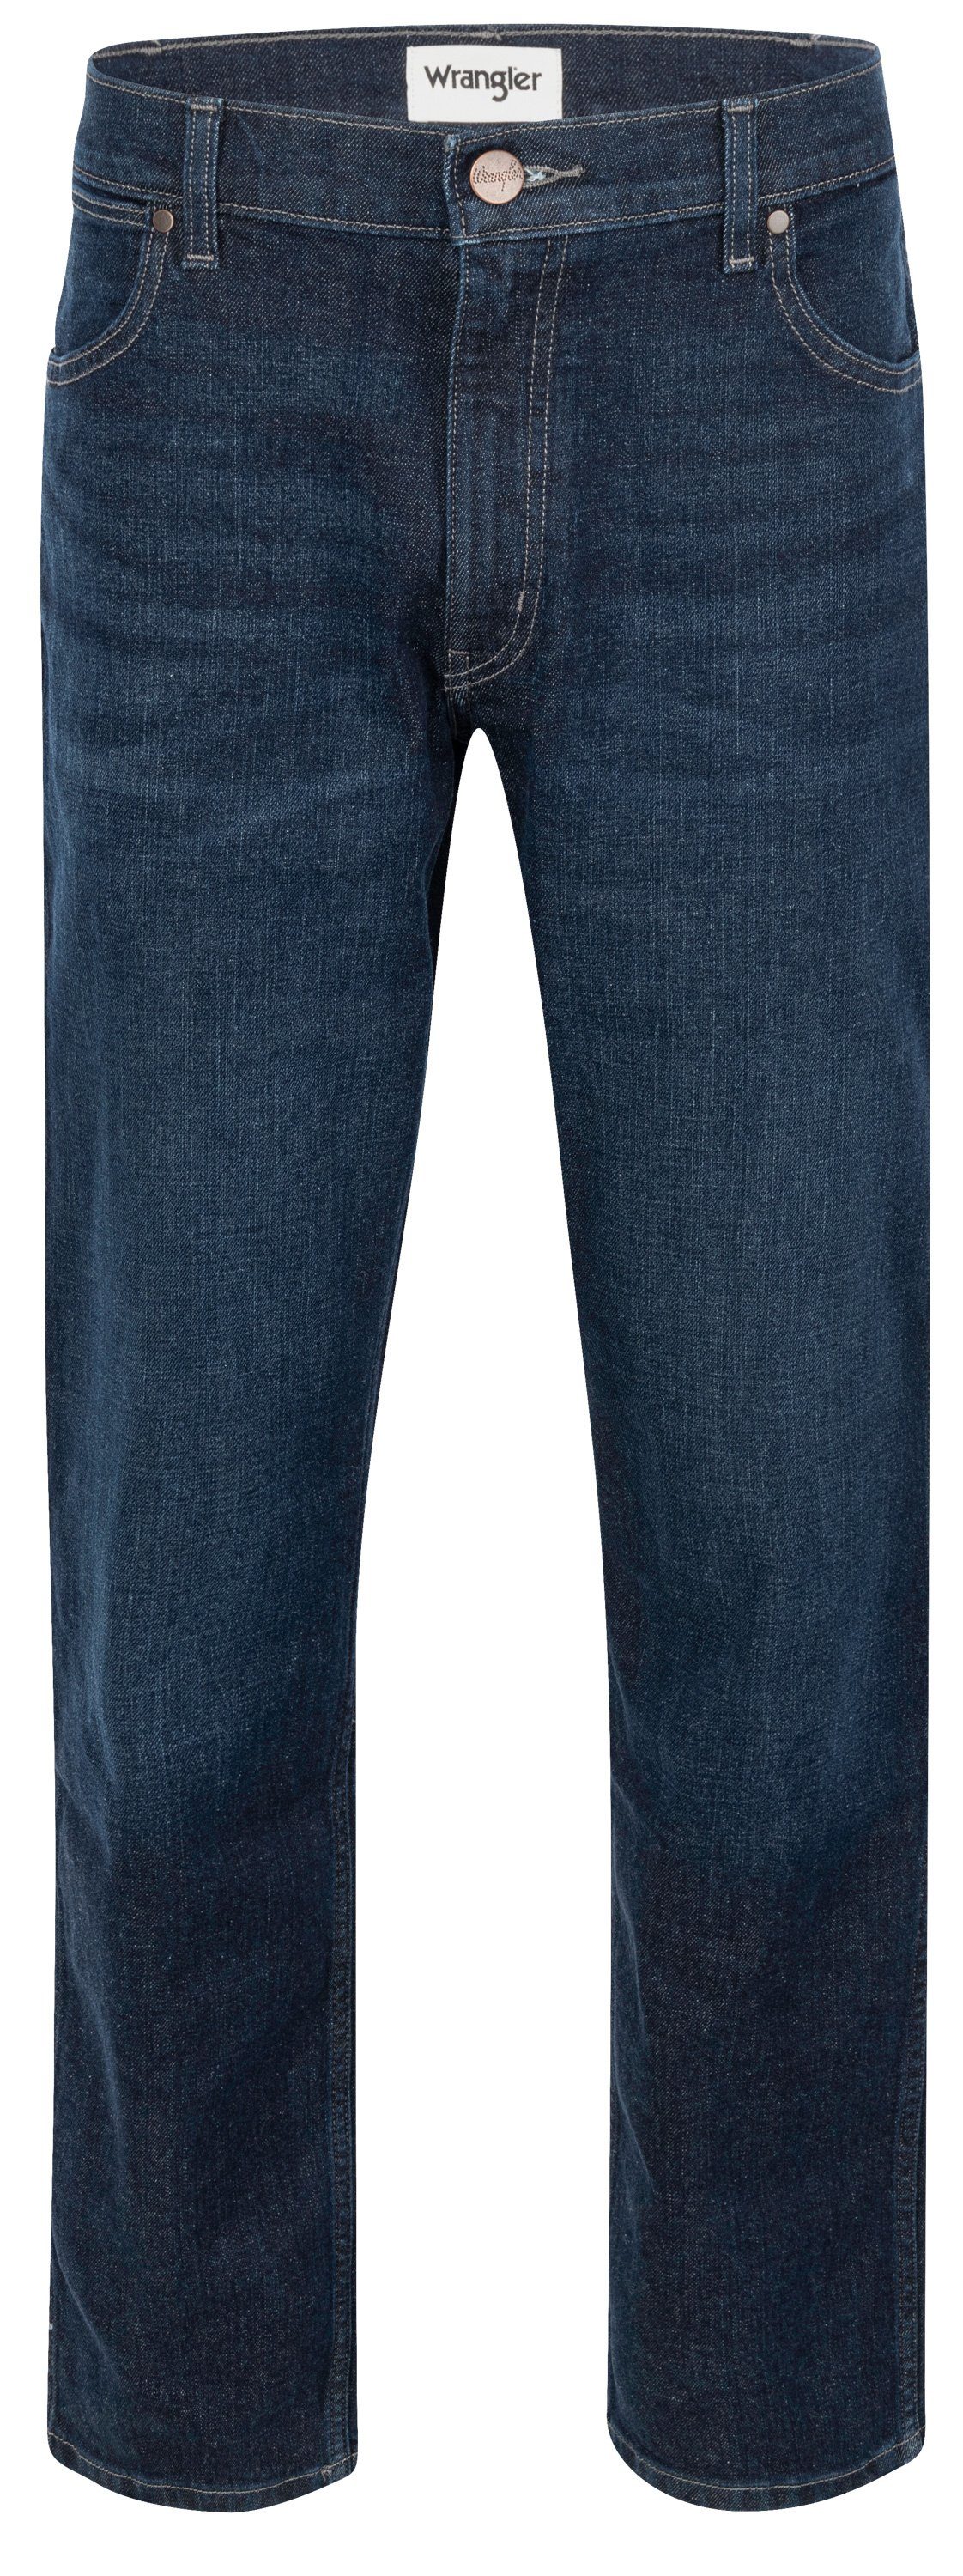 Wrangler 5-Pocket-Jeans WRANGLER GREENSBORO wonderwall 112339305